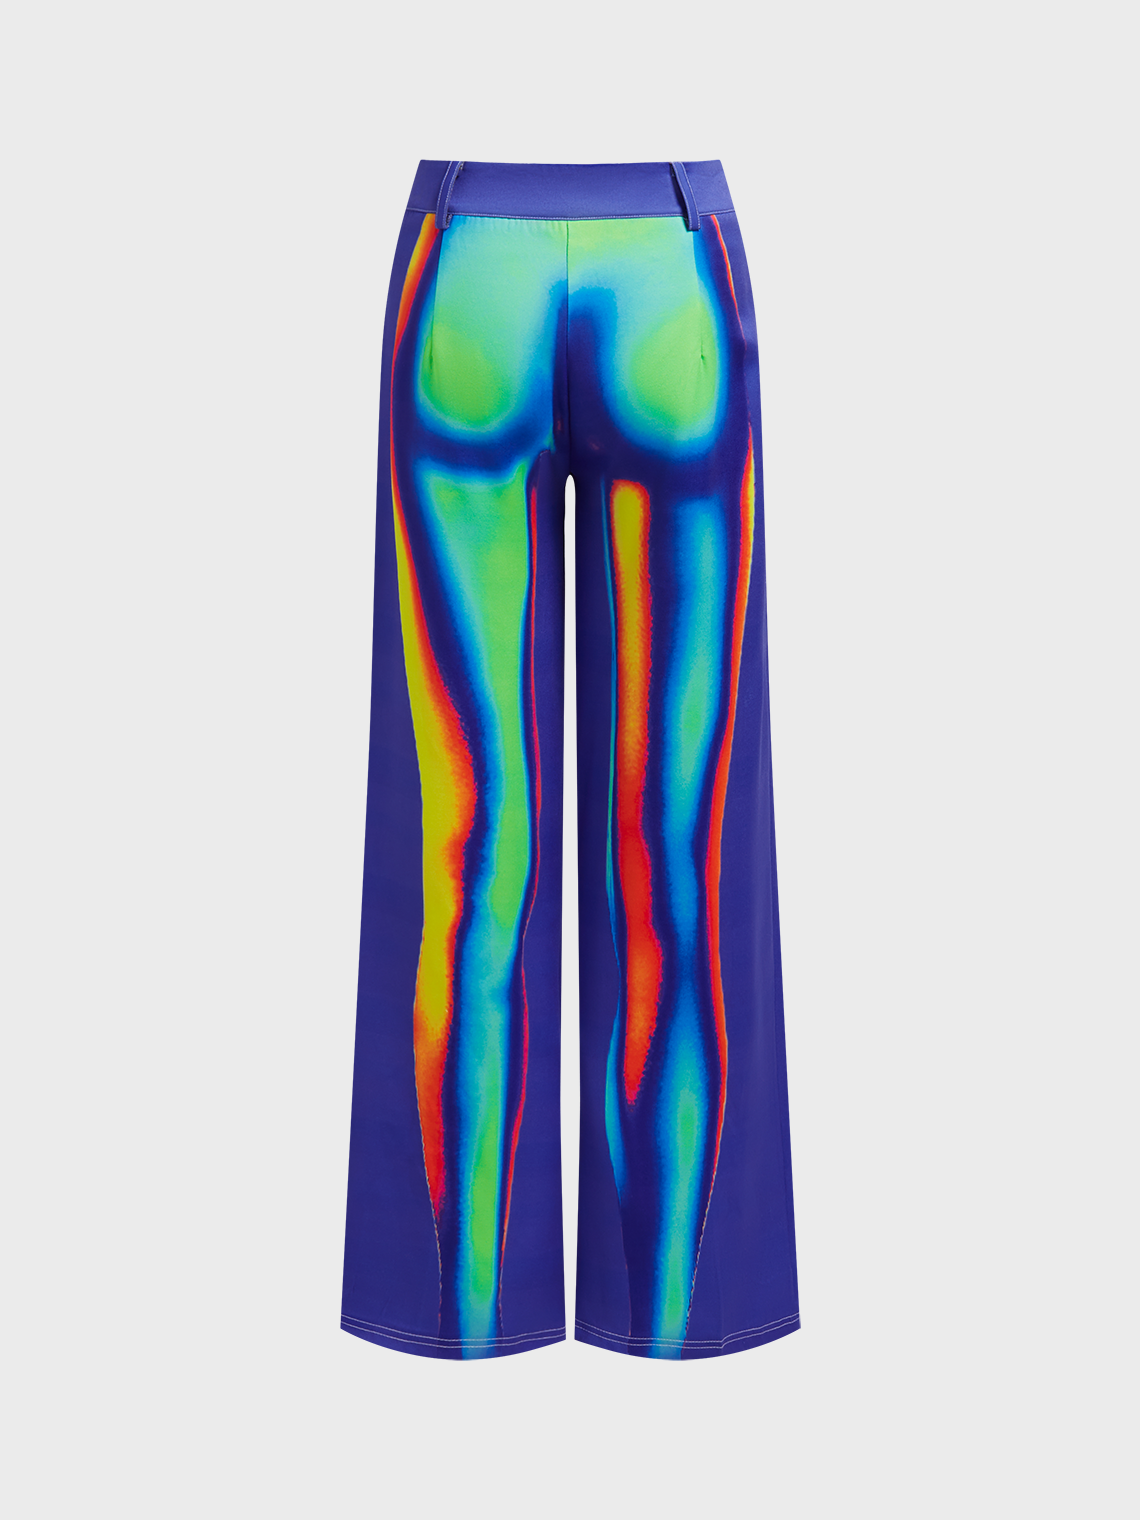 Warm Thermal Body Print Human Body Pants